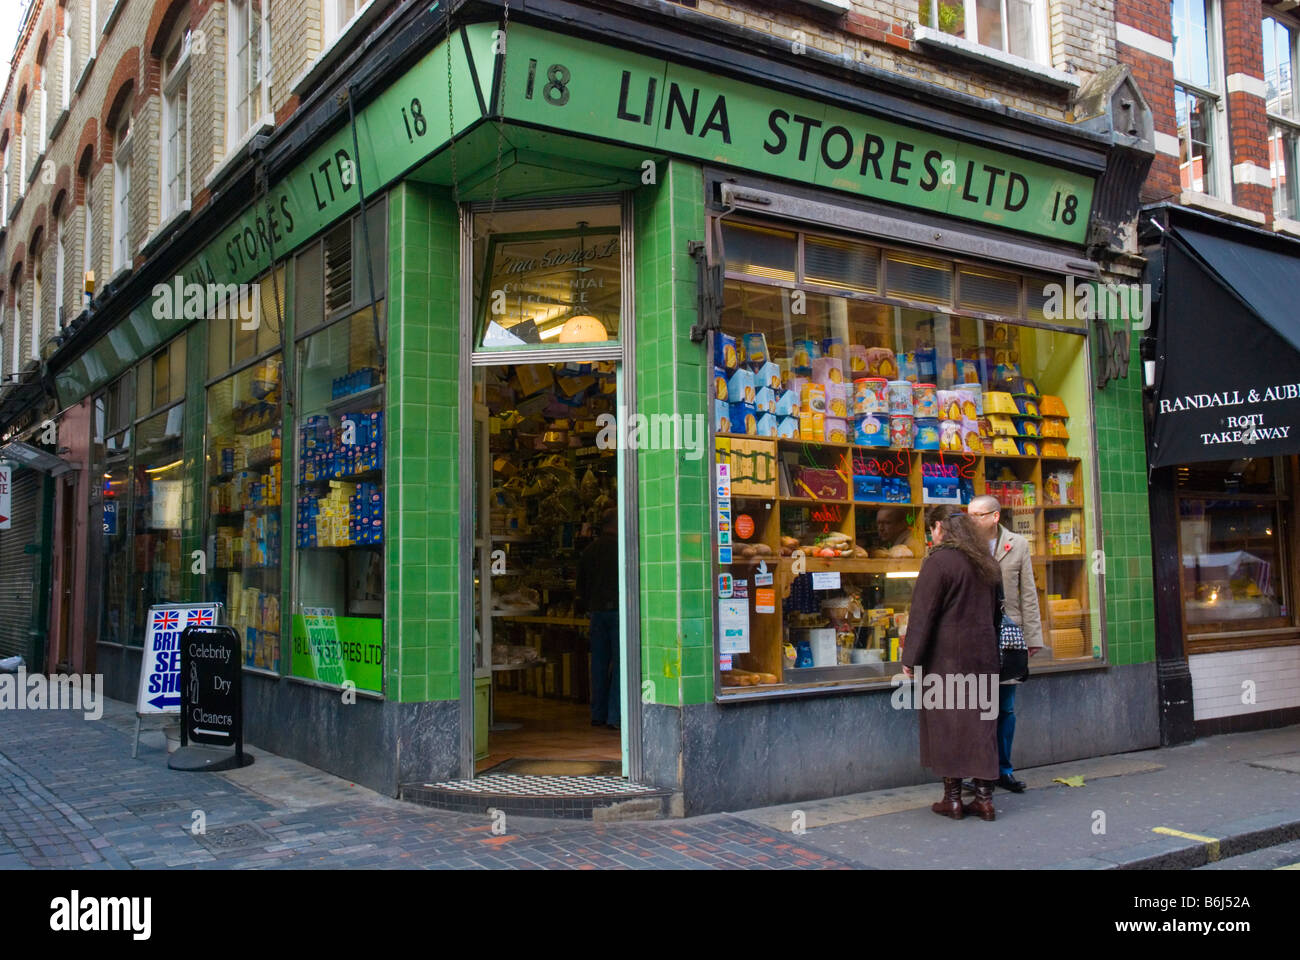 Lina Stores the Italian shop in Soho London England UK Stock Photo: 21297426 - Alamy